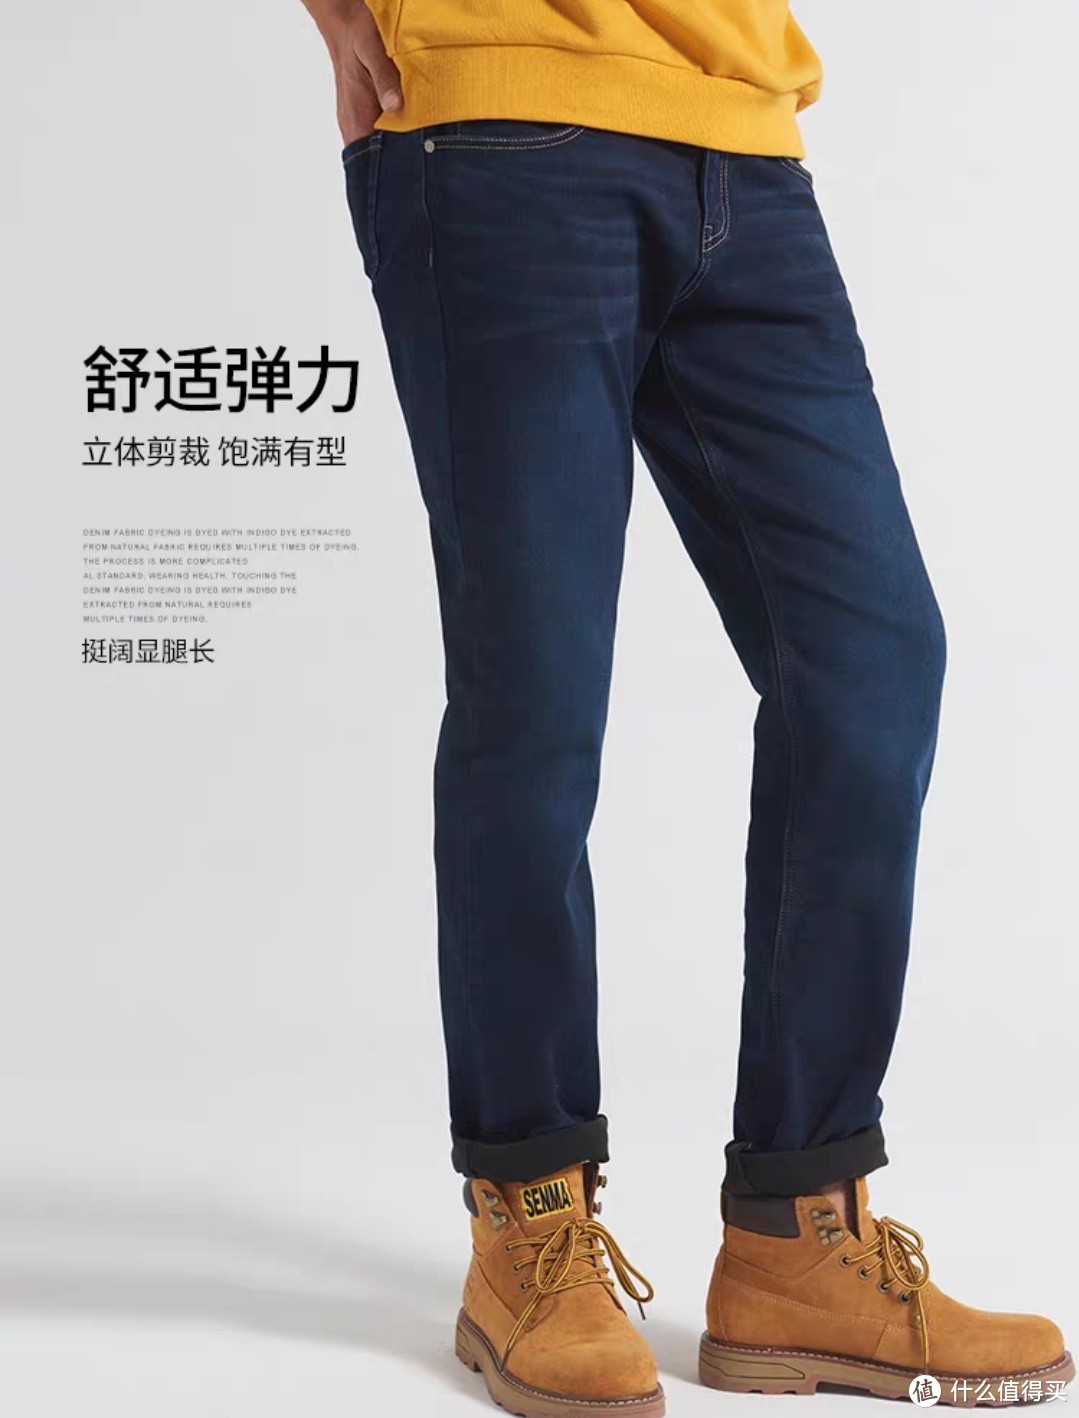 国际服装巨头的牛仔裤国内代工商，版型类似，可以去看看的，双十一蹲一波